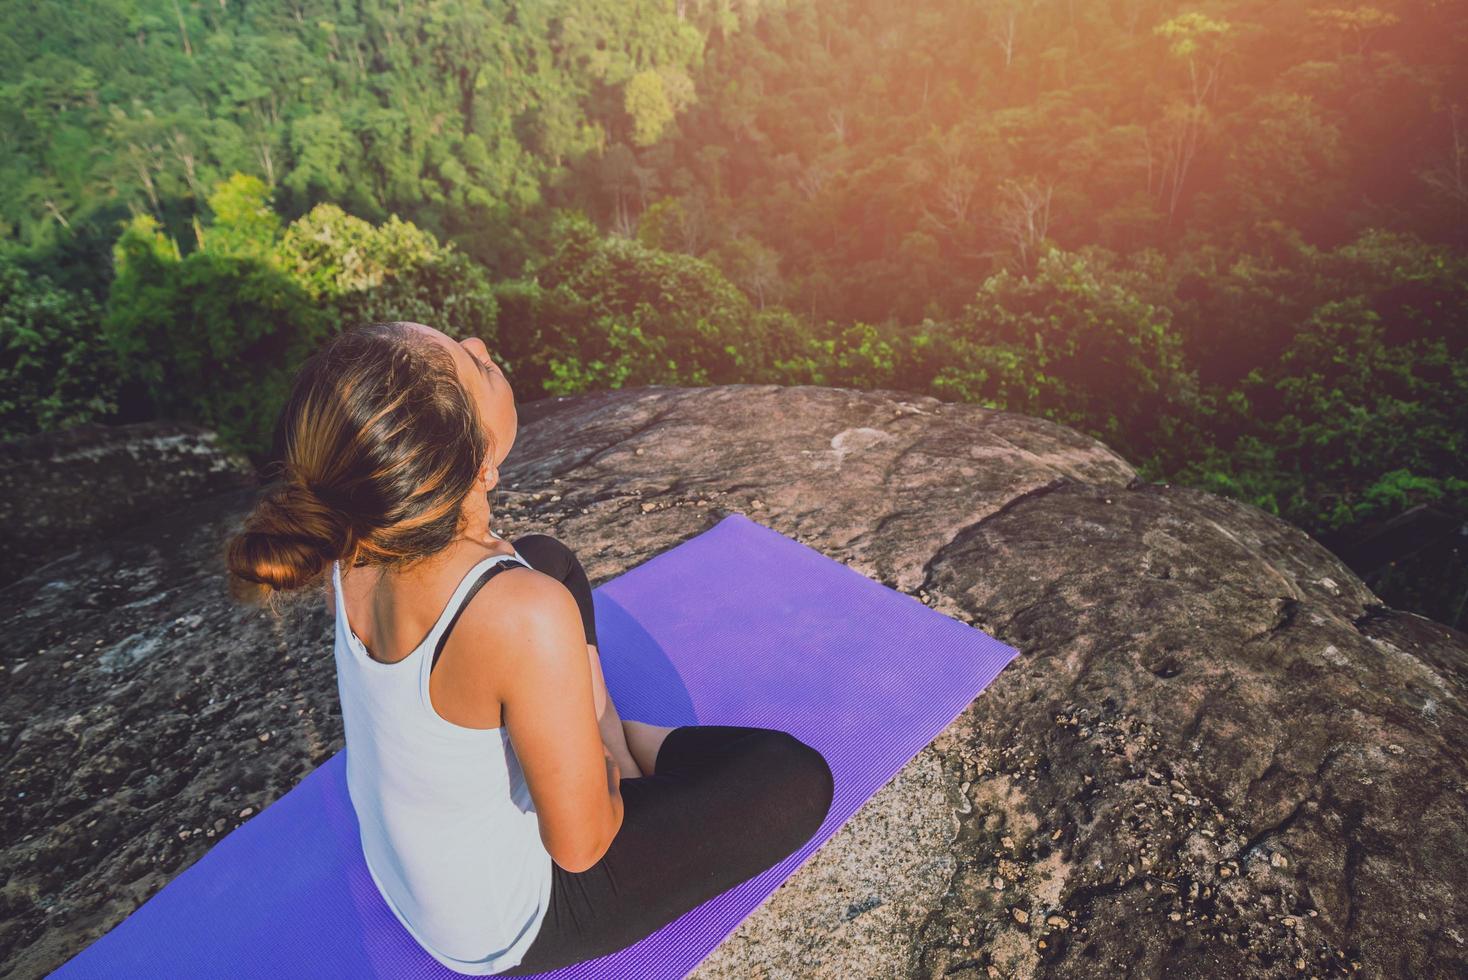 las mujeres asiáticas se relajan en las vacaciones. jugar si yoga. en el acantilado de roca de montaña. naturaleza de los bosques de montaña en tailandia foto